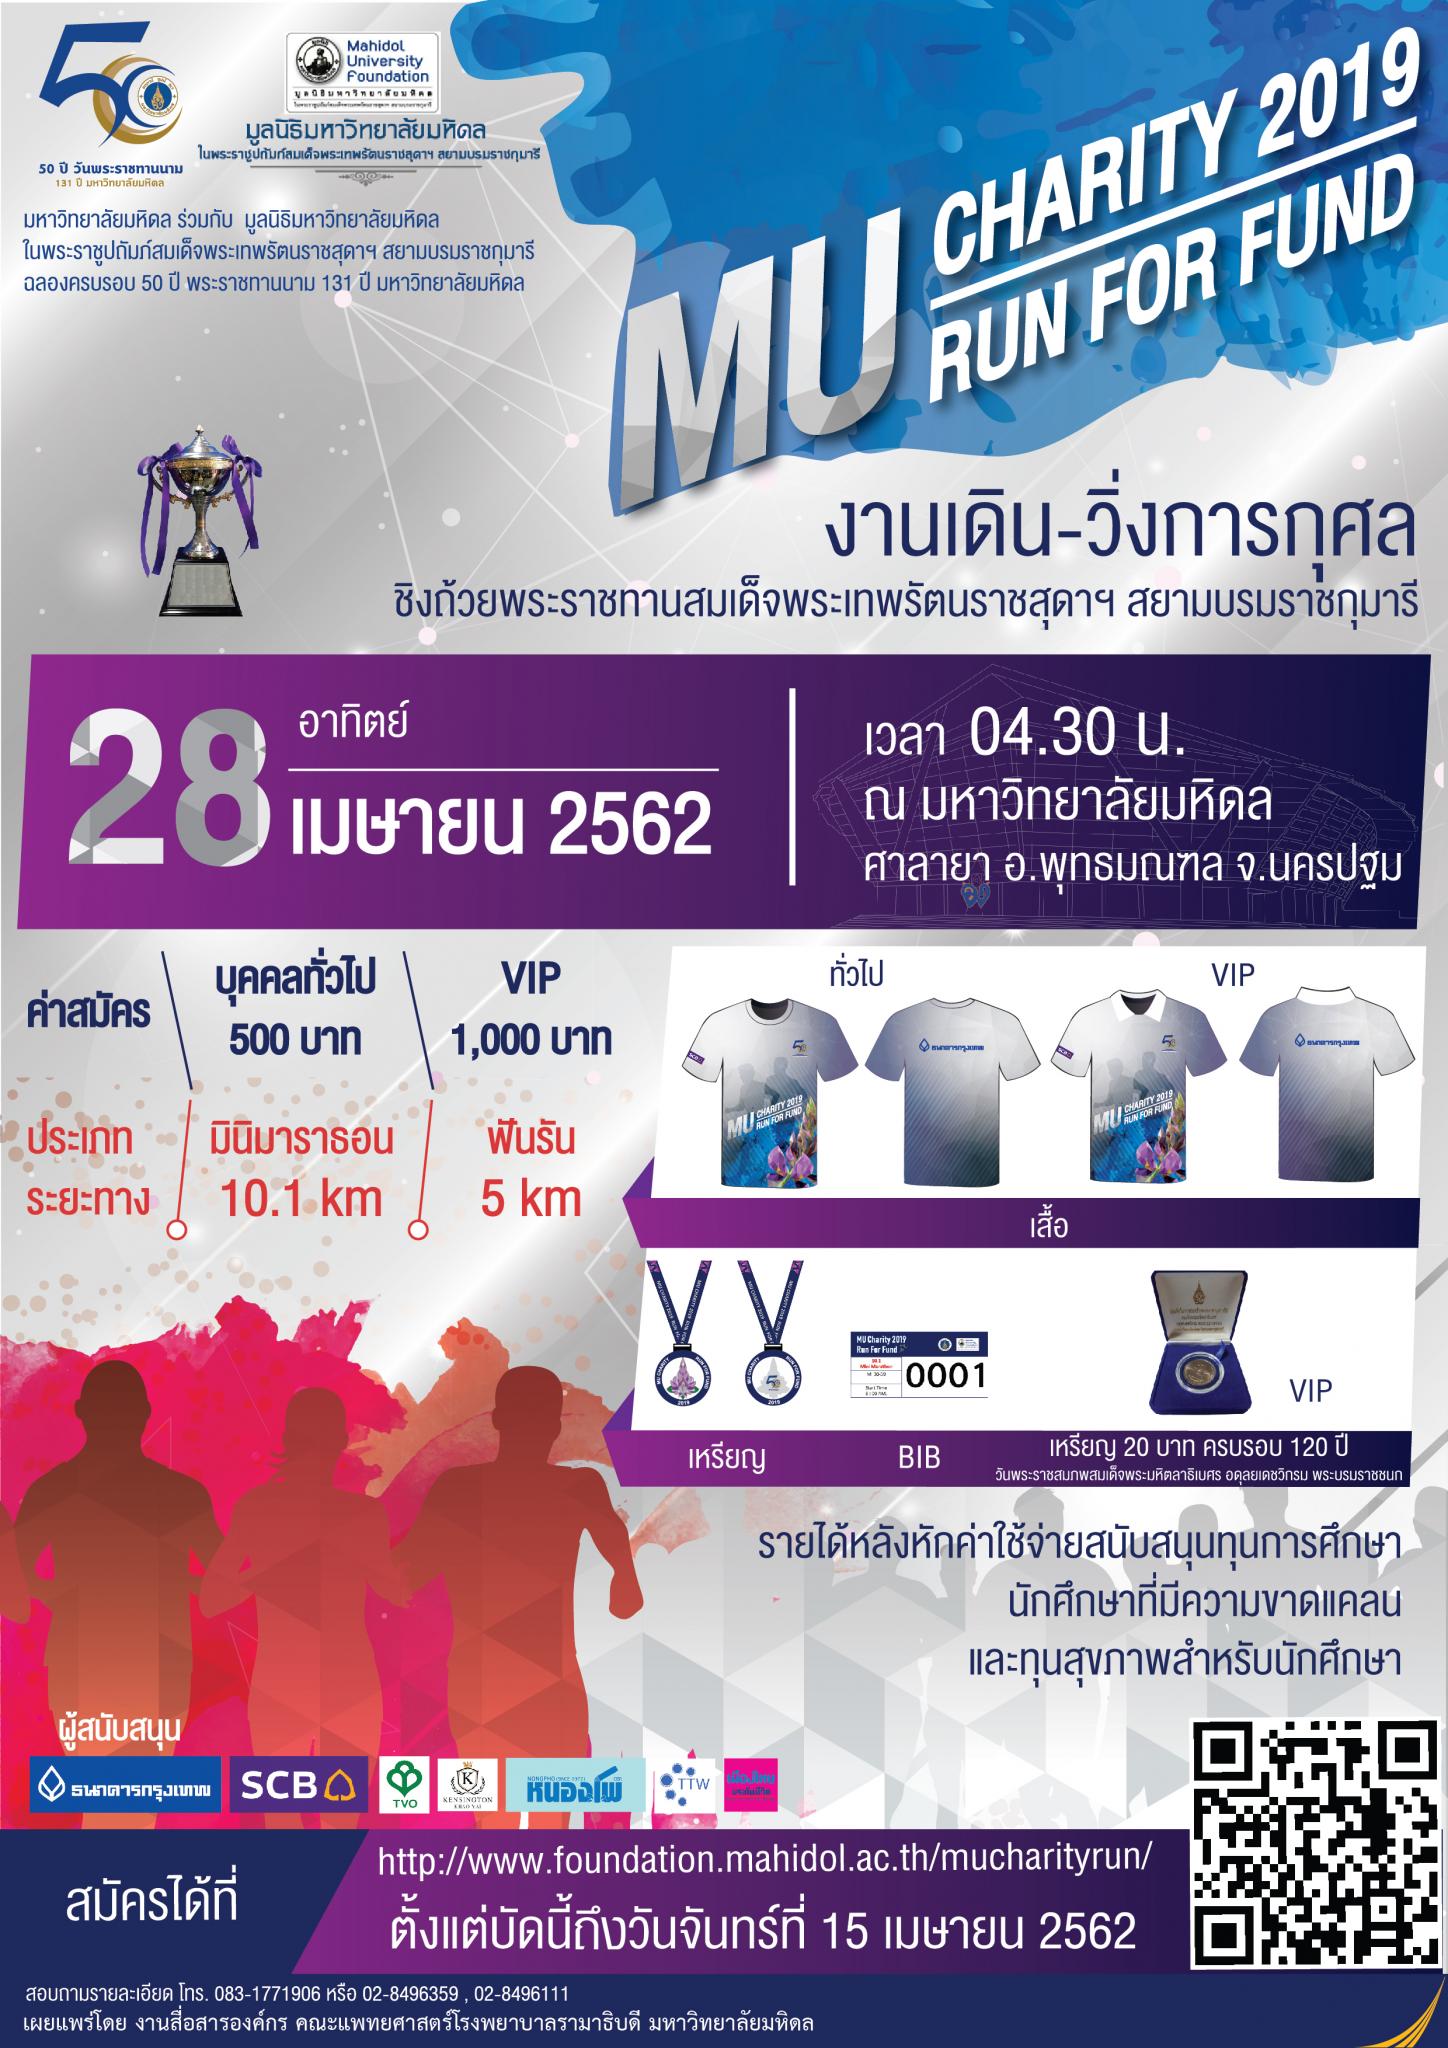 งานเดิน-วิ่งการกุศล MU CHARITY 2019 RUN FOR FUND ชิงถ้วยพระราชทานสมเด็จพระเทพรัตน์ราชสุดาฯ สยามบรมราชกุมารี